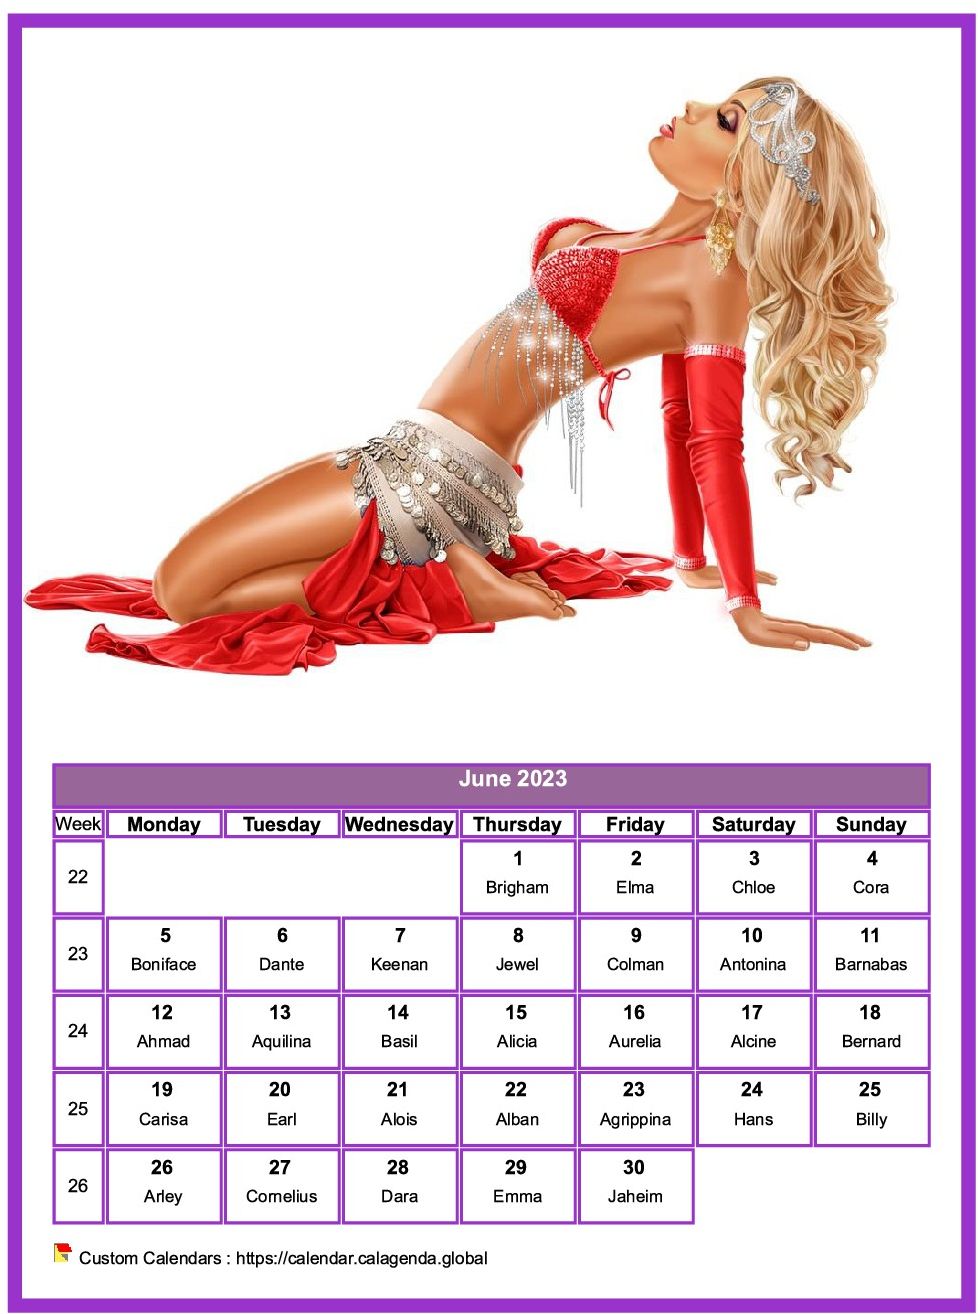 Calendar June 2023 women